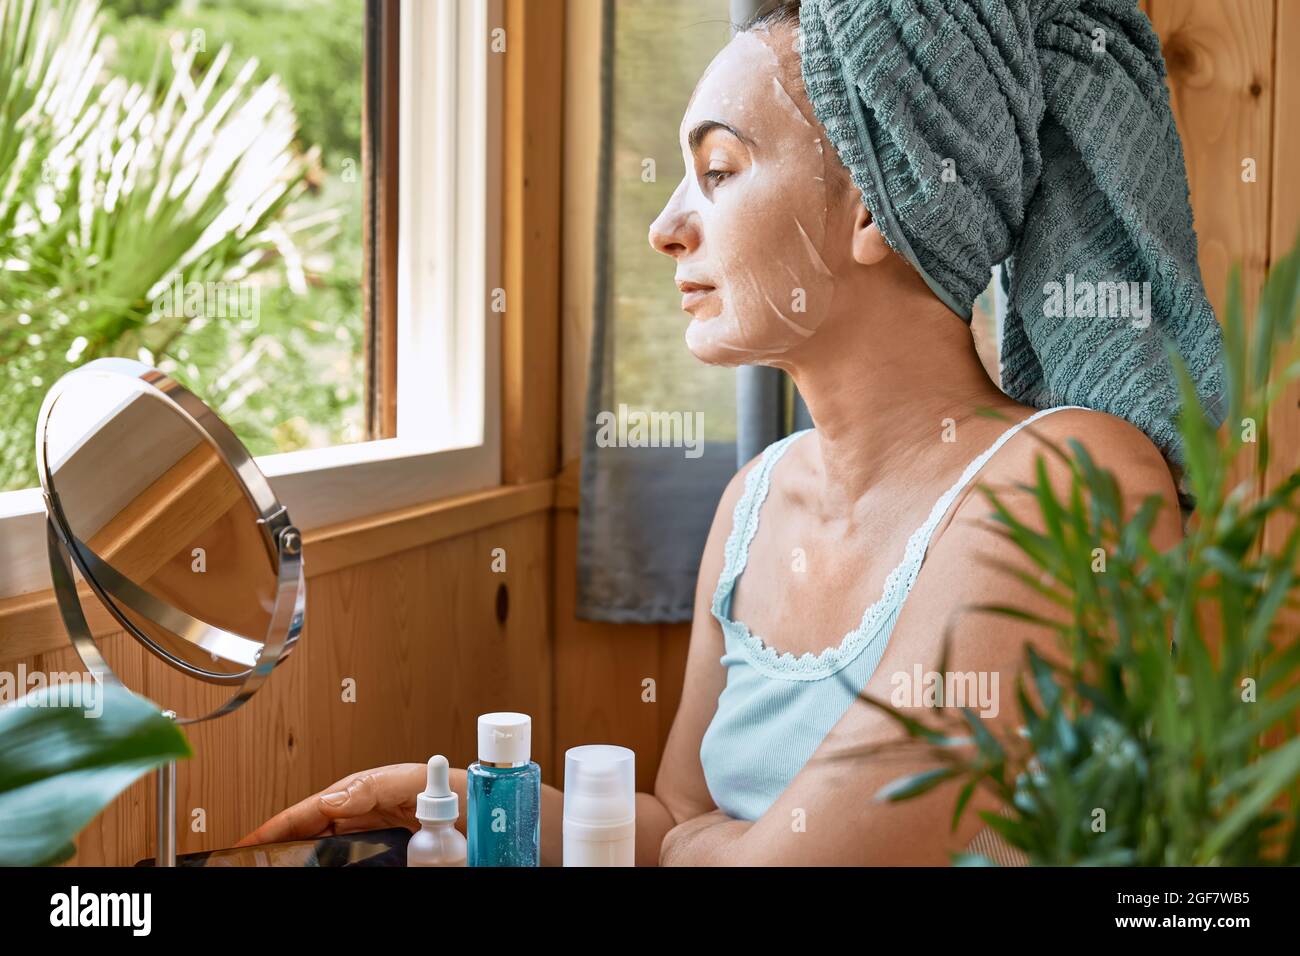 Soin de la peau. Femme d'âge moyen avec un masque hydratant en feuille dans son visage regarde à travers la fenêtre. Soulever le masque anti-rides sous les yeux. Collagène m Banque D'Images